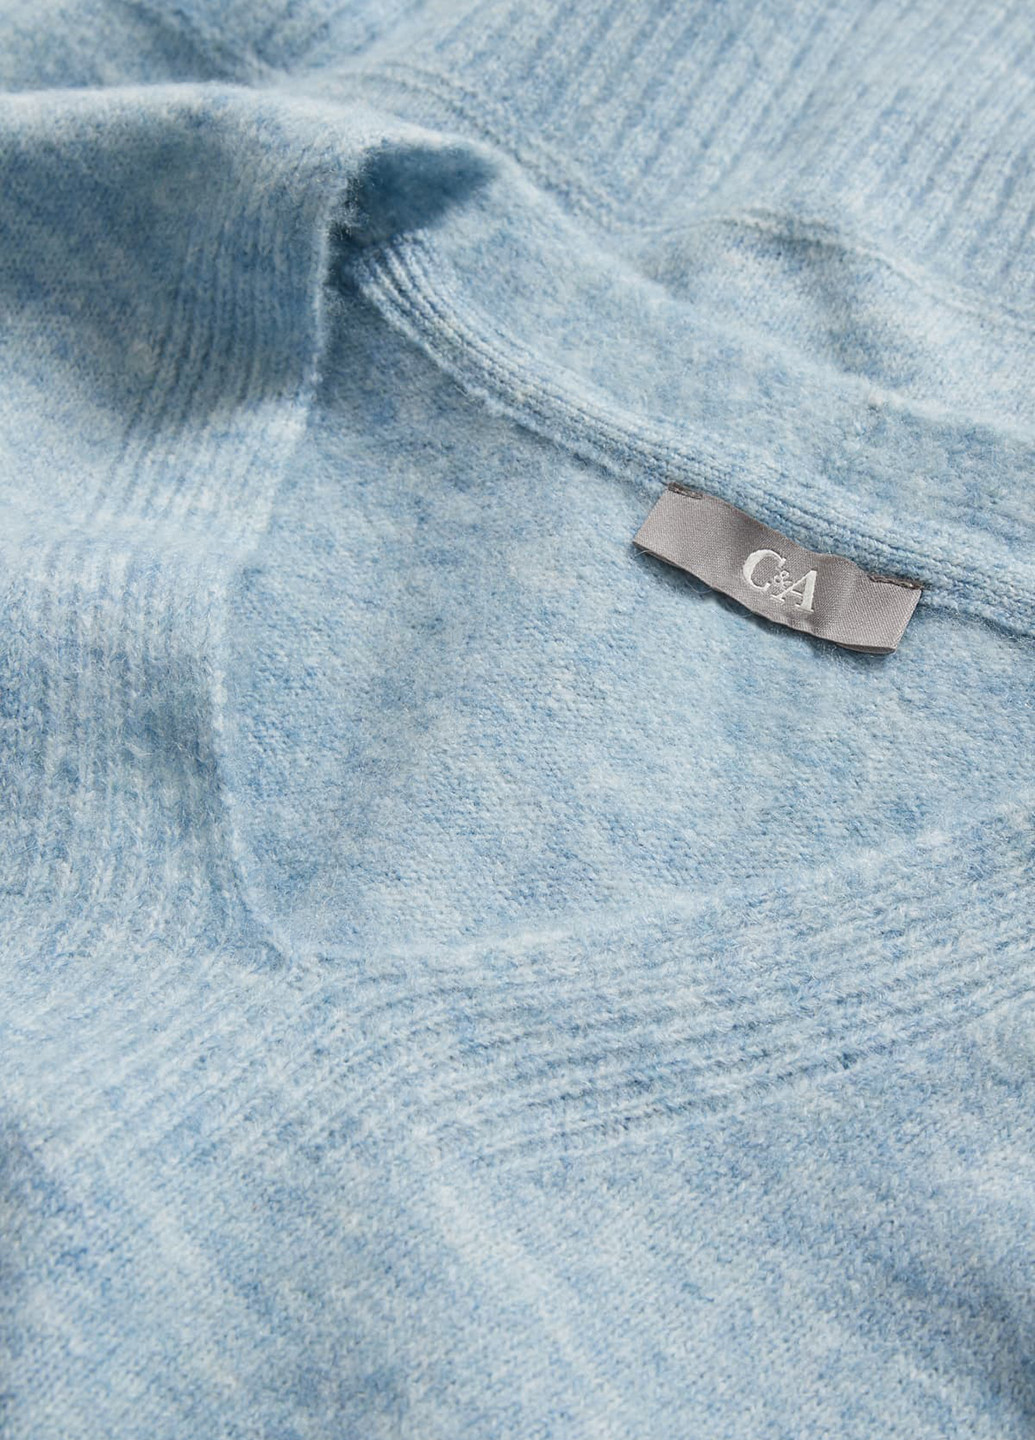 Голубой демисезонный пуловер пуловер C&A